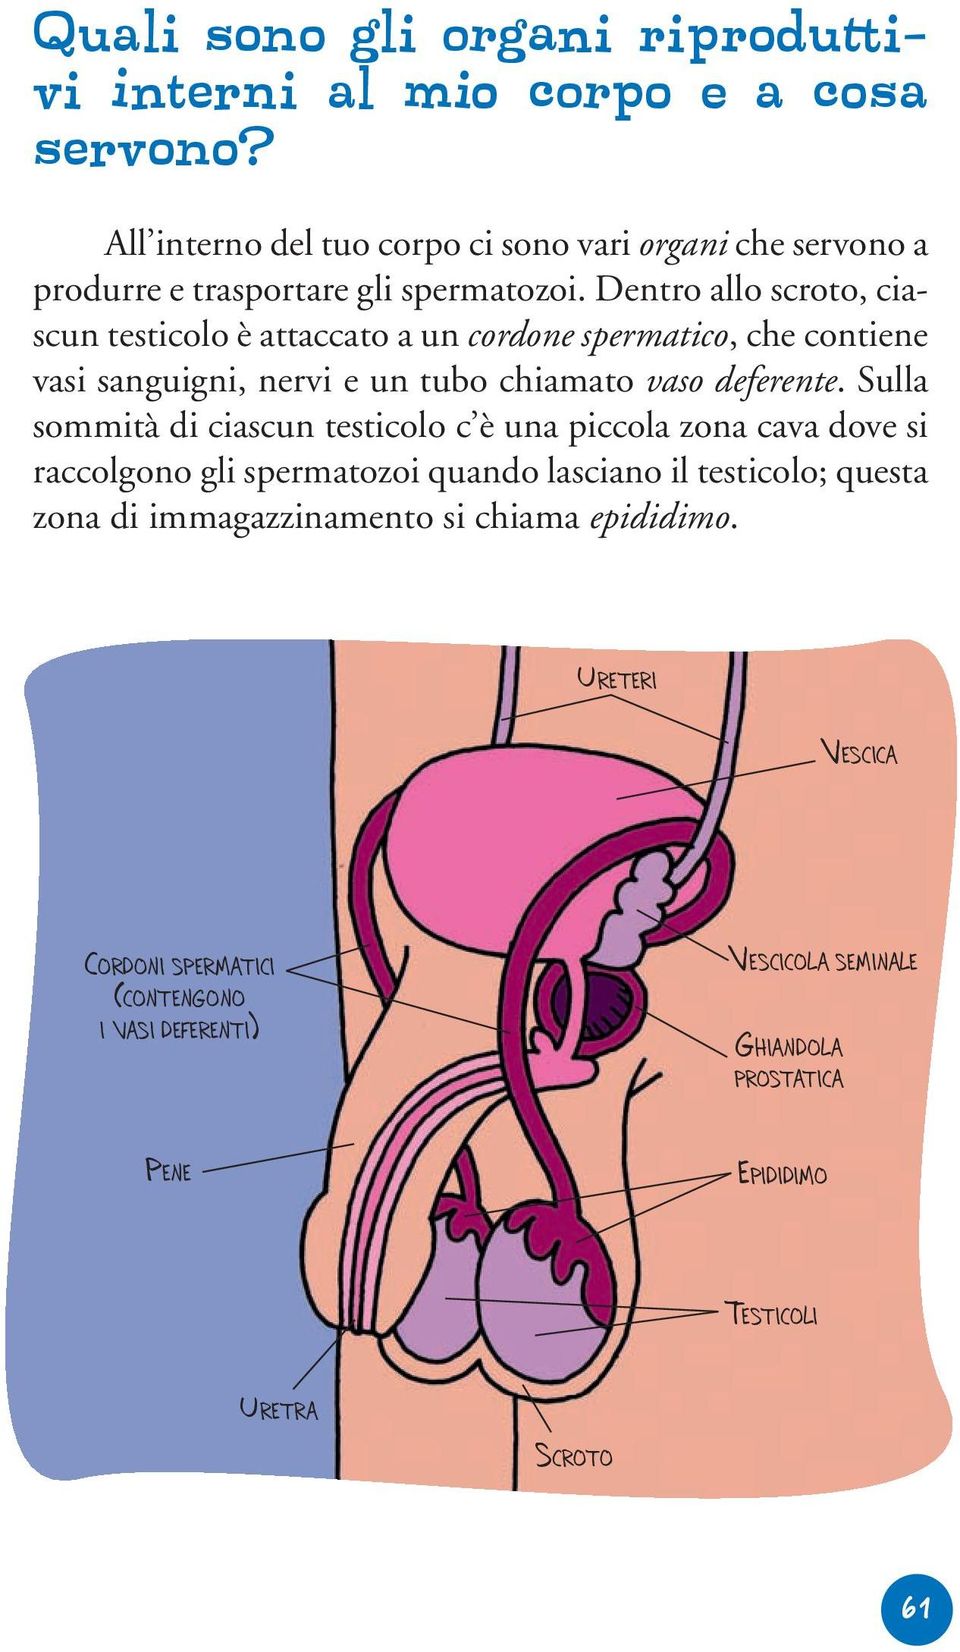 Dentro allo scroto, ciascun testicolo è attaccato a un cordone spermatico, che contiene vasi sanguigni, nervi e un tubo chiamato vaso deferente.